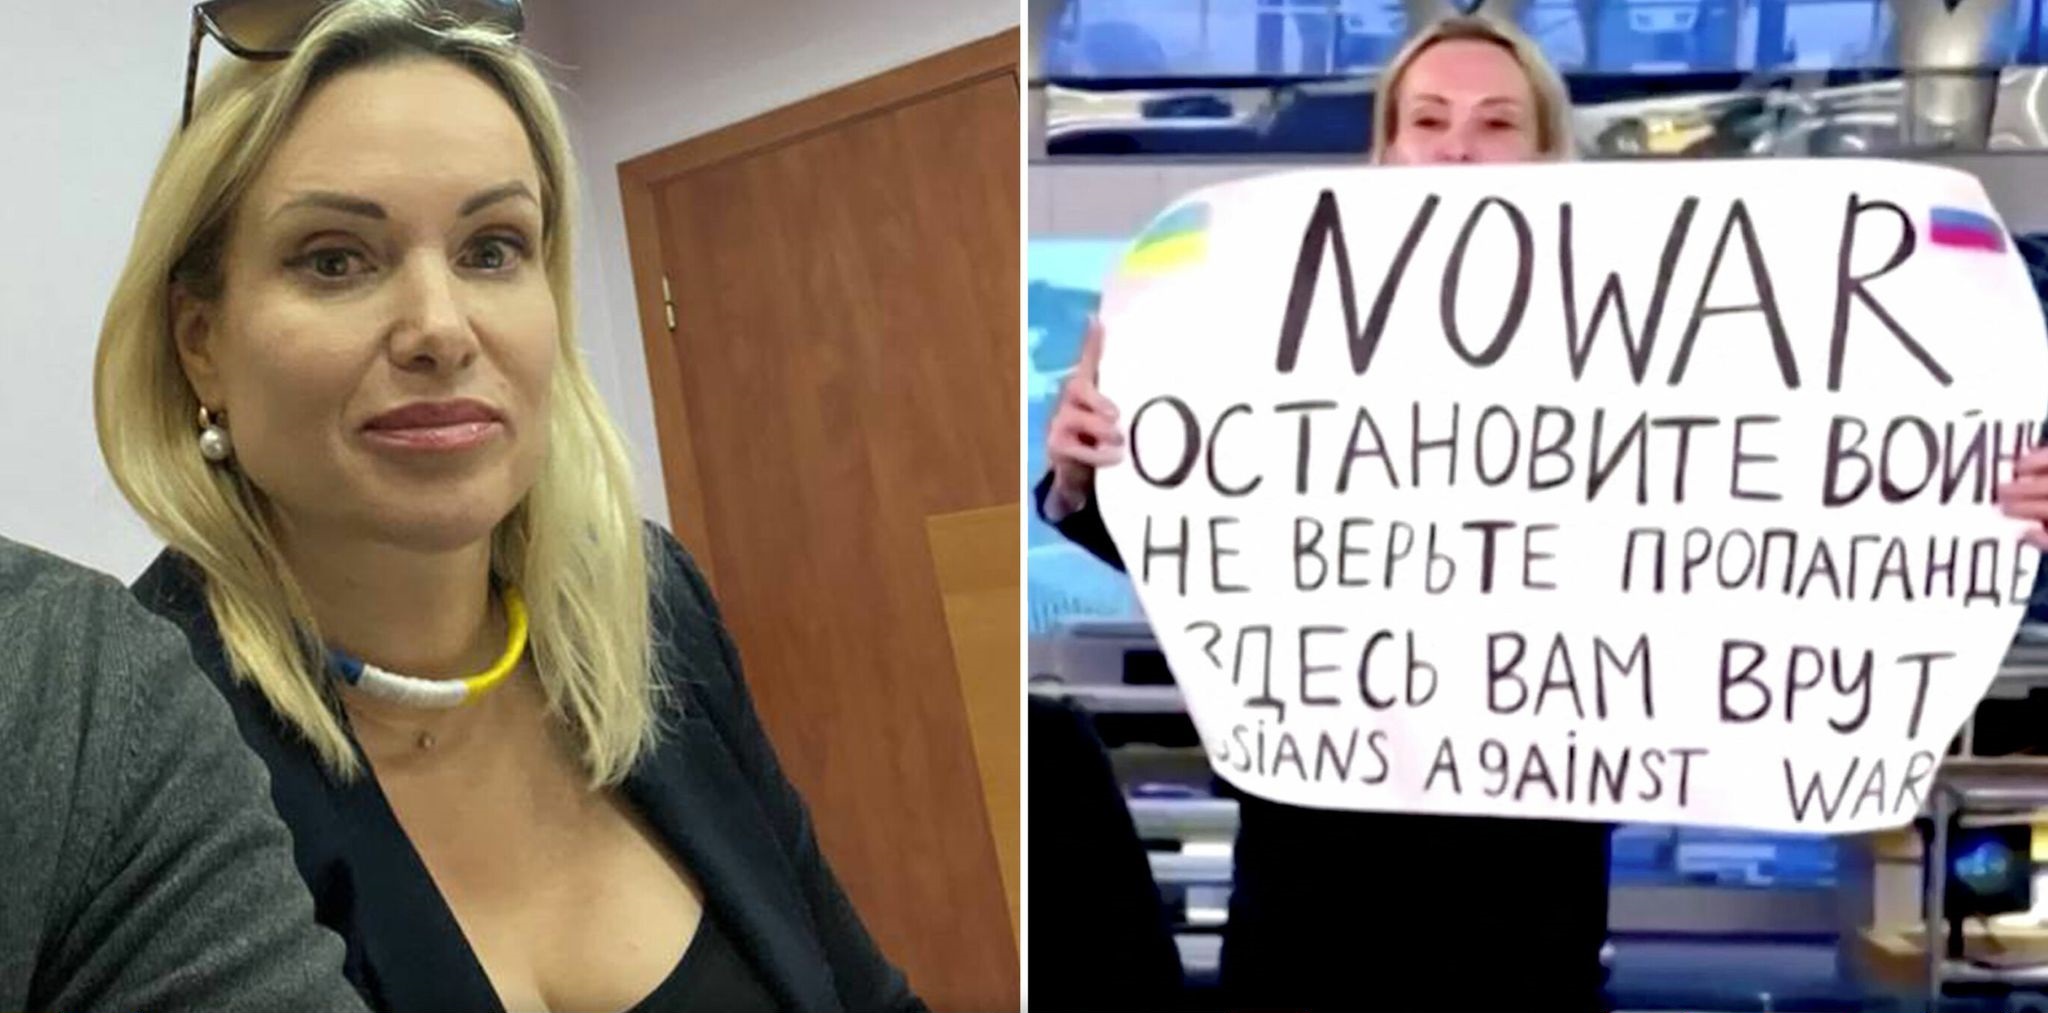 Μαρίνα Οβσιάνικοβα: Οι πρώτες δηλώσεις της Ρωσίδας δημοσιογράφου που διαμαρτυρήθηκε on air